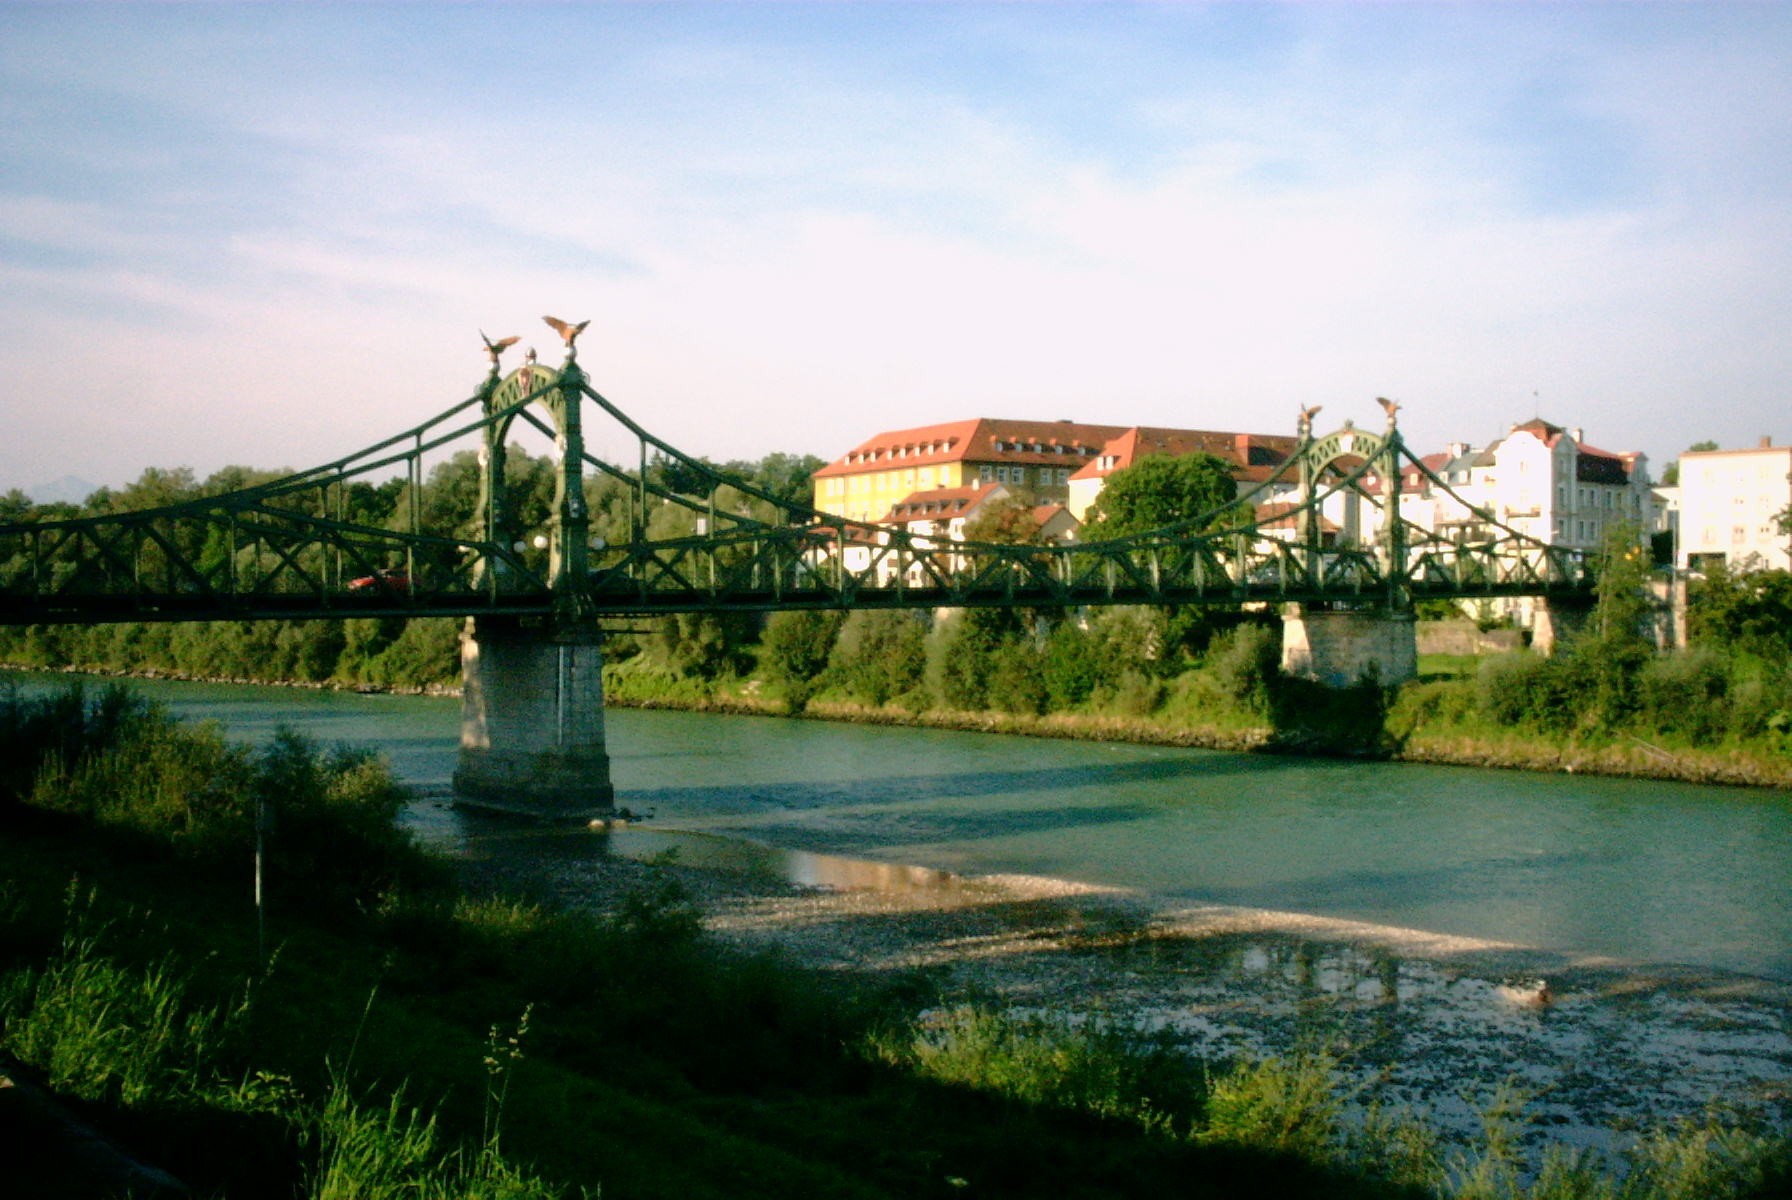 Länderbrücke in Laufen an der Salzach.
